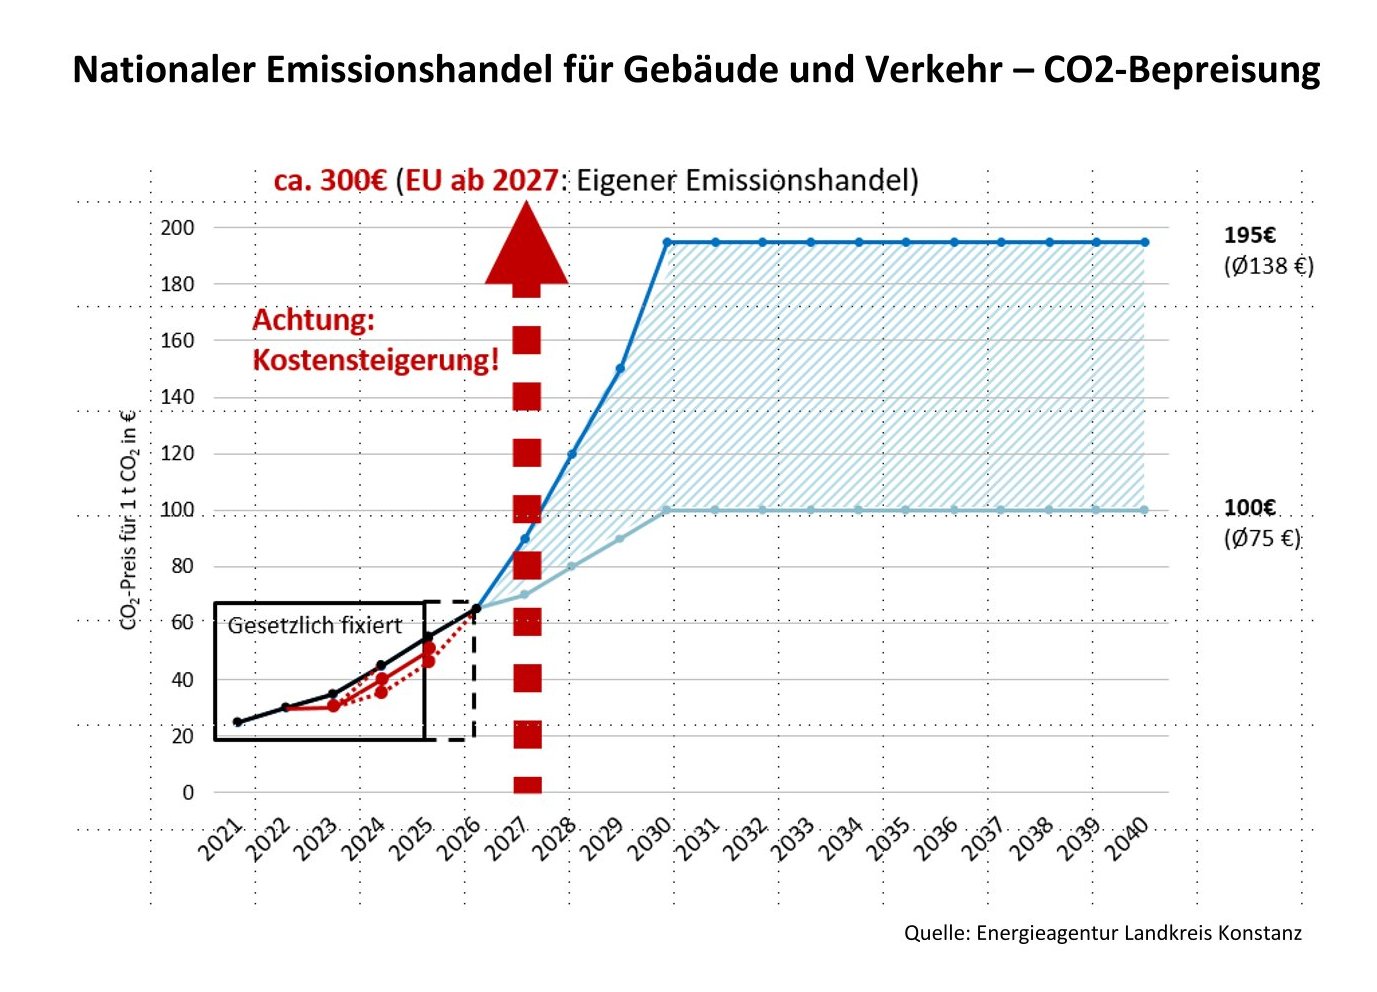  Grafik: Nationaler Emissionshandel für Gebäude und Verkehr - Quelle: Energieagentur Kreis Konstanz 